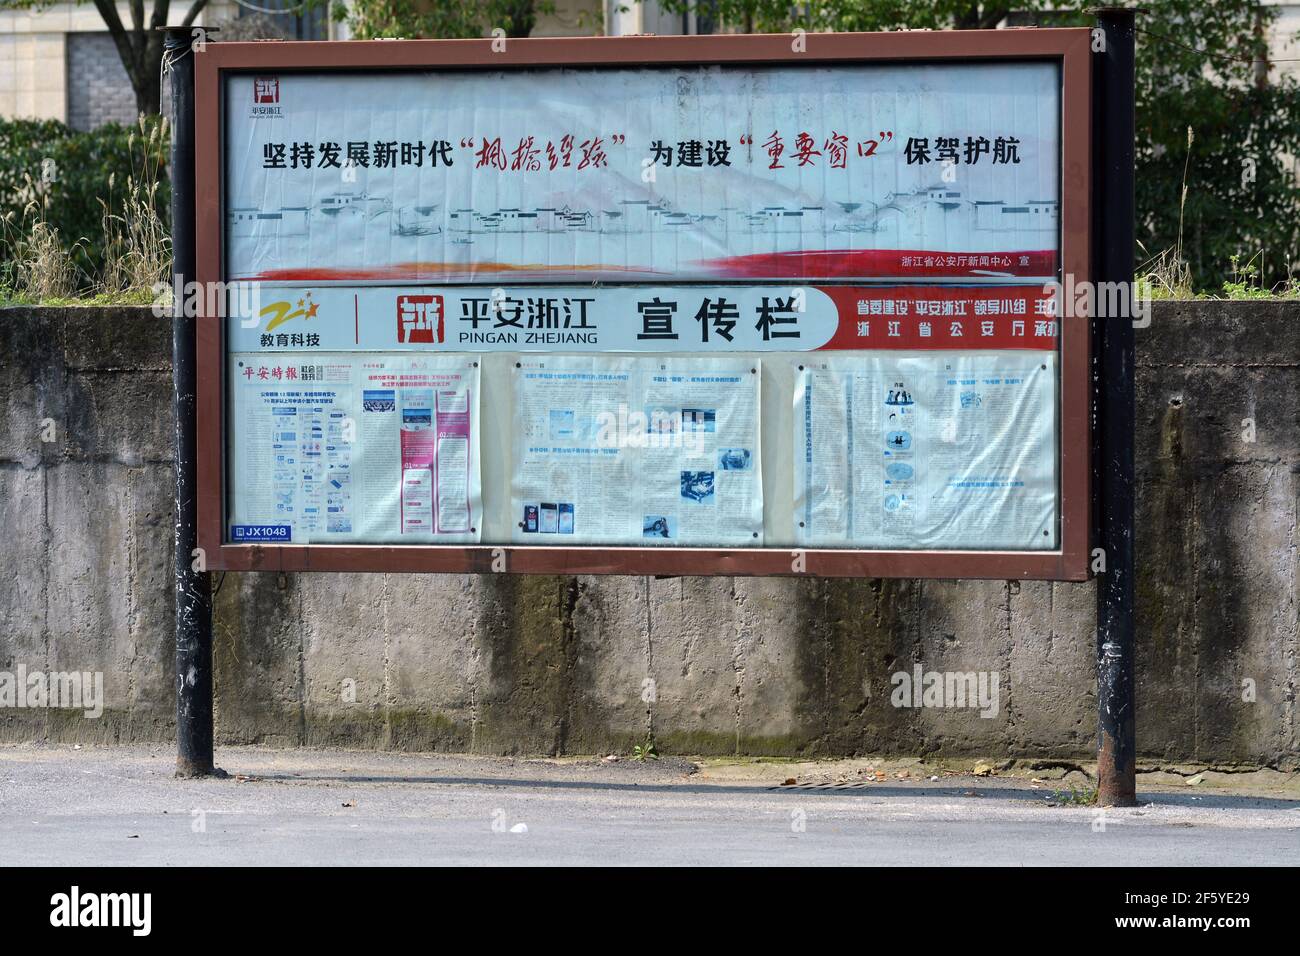 Informazioni della comunità locale in Cina. Nonostante così tanto disponibile on-line, c'è ancora bisogno di notizie e comunicazioni locali Foto Stock